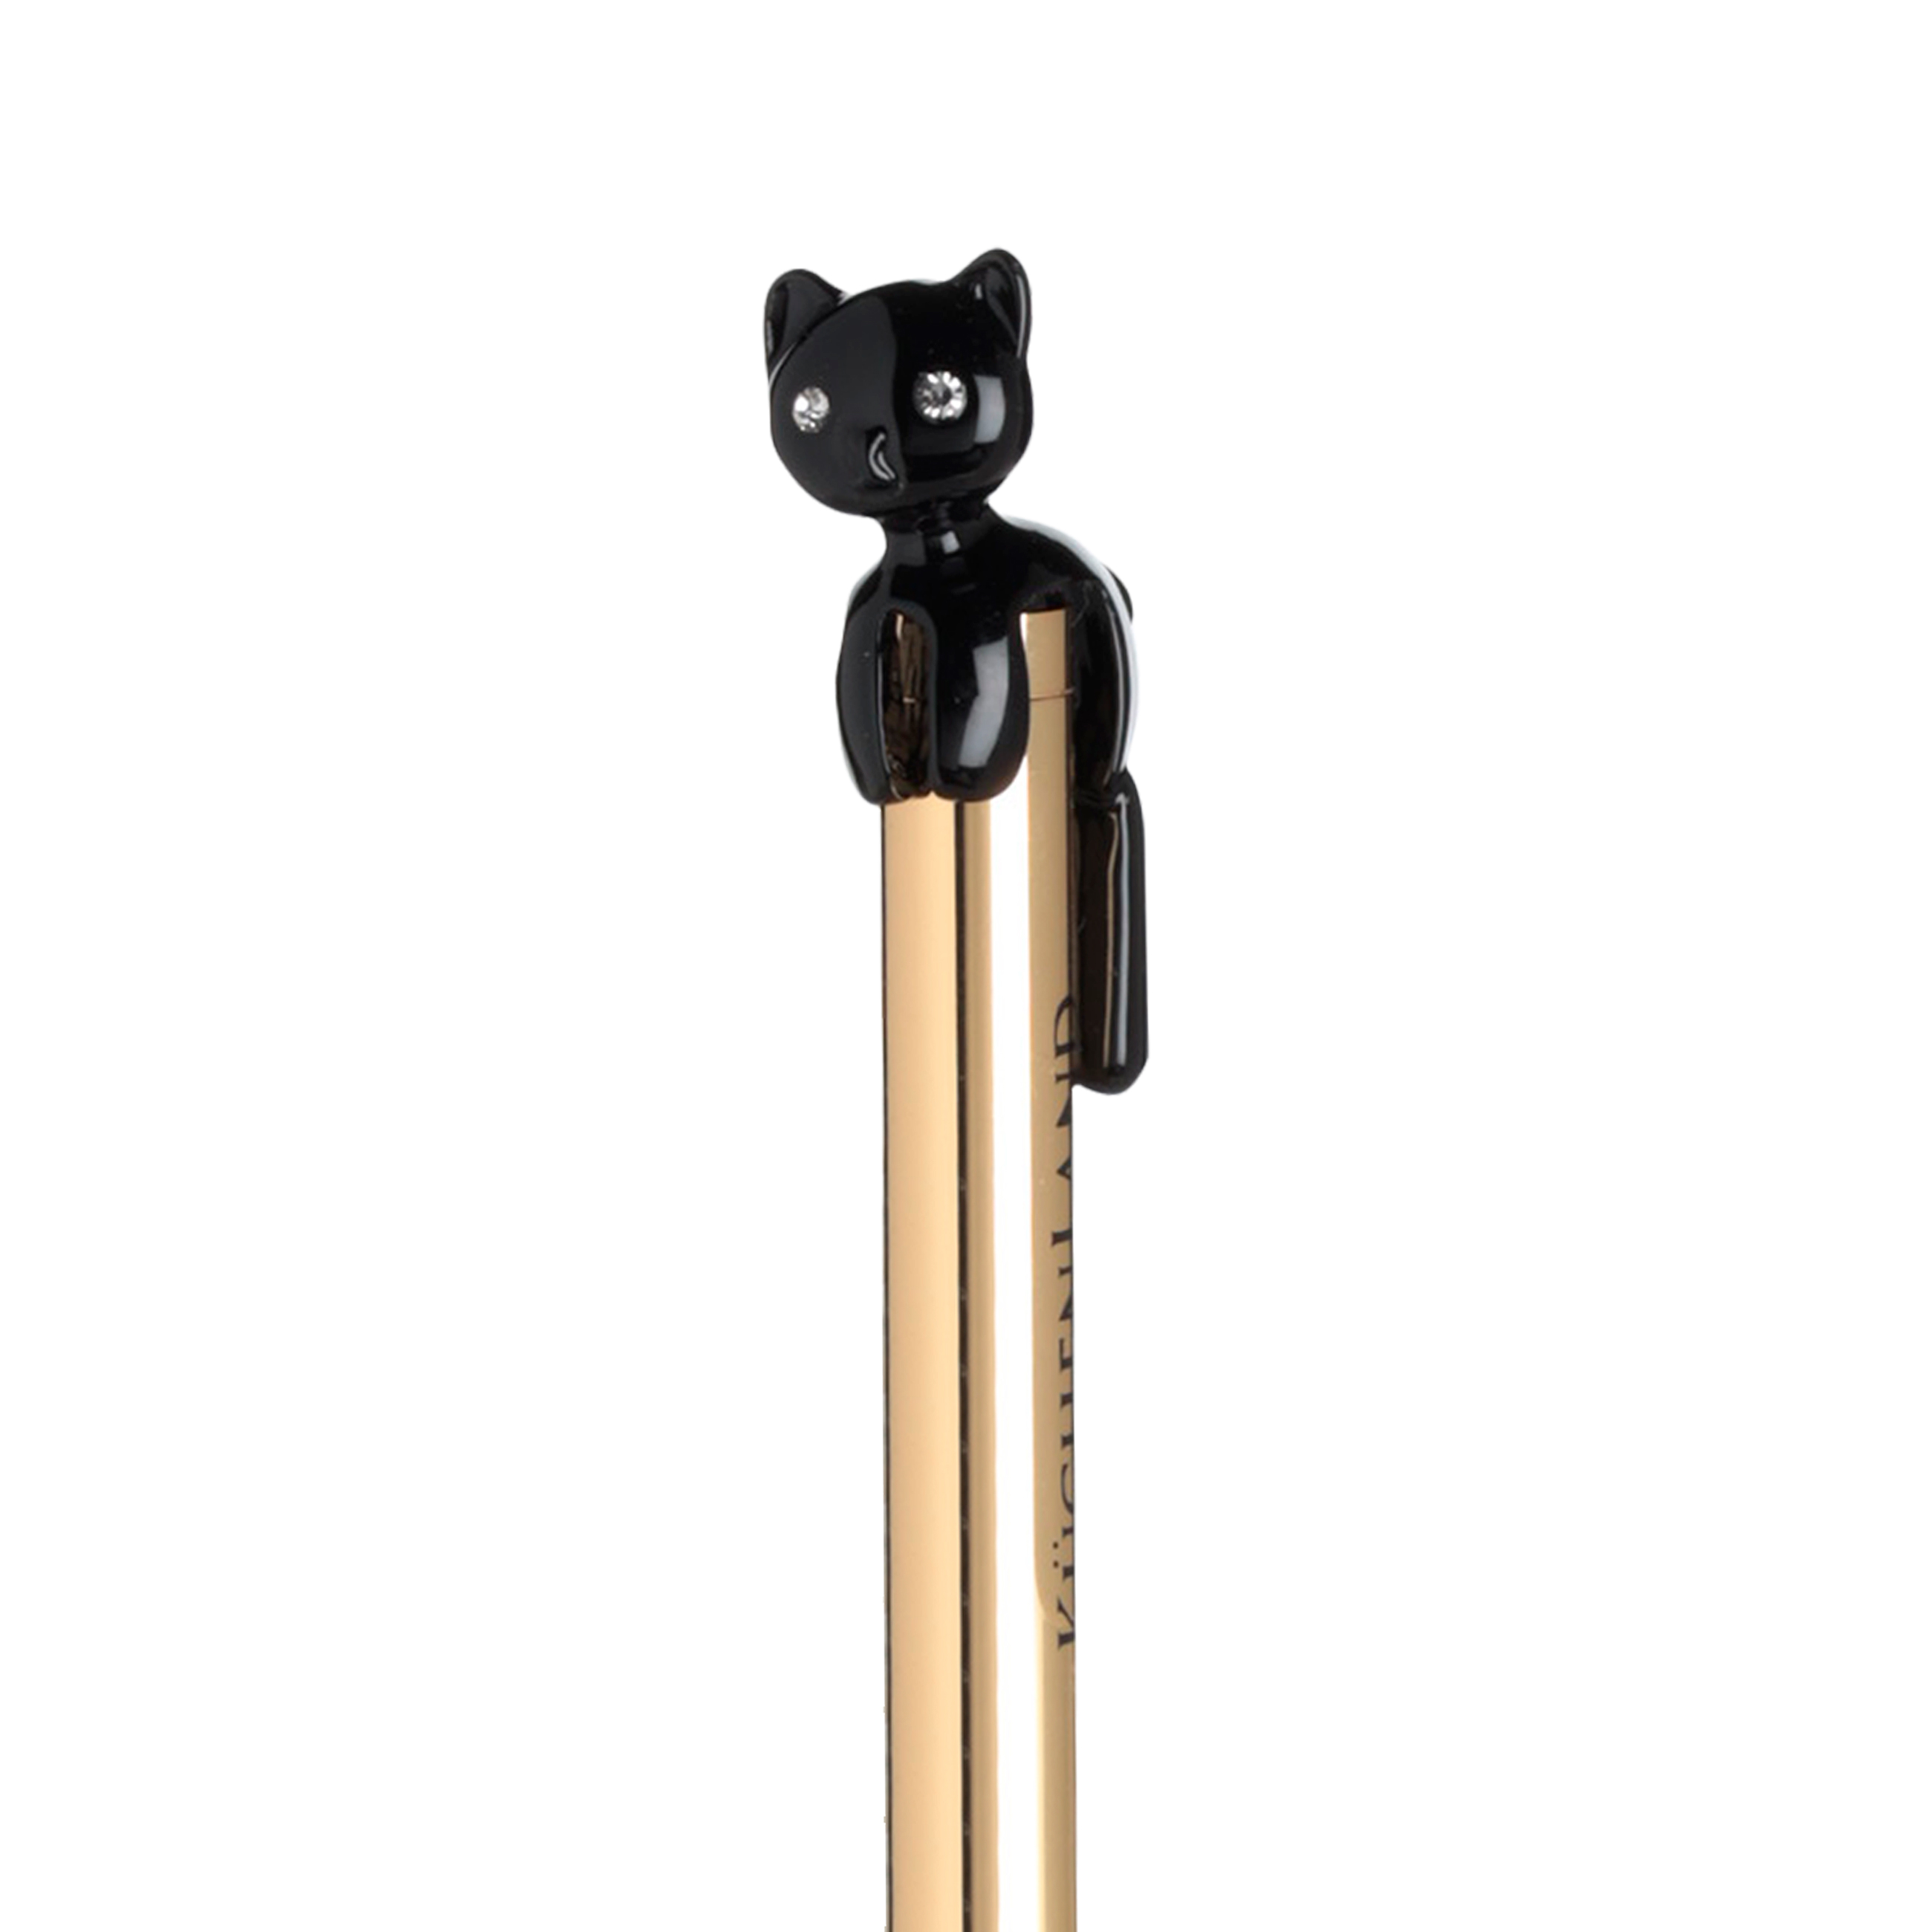 Ручка шариковая, 14 см, с фигуркой, металл, золотистая, Черный кот, Draw figure изображение № 3